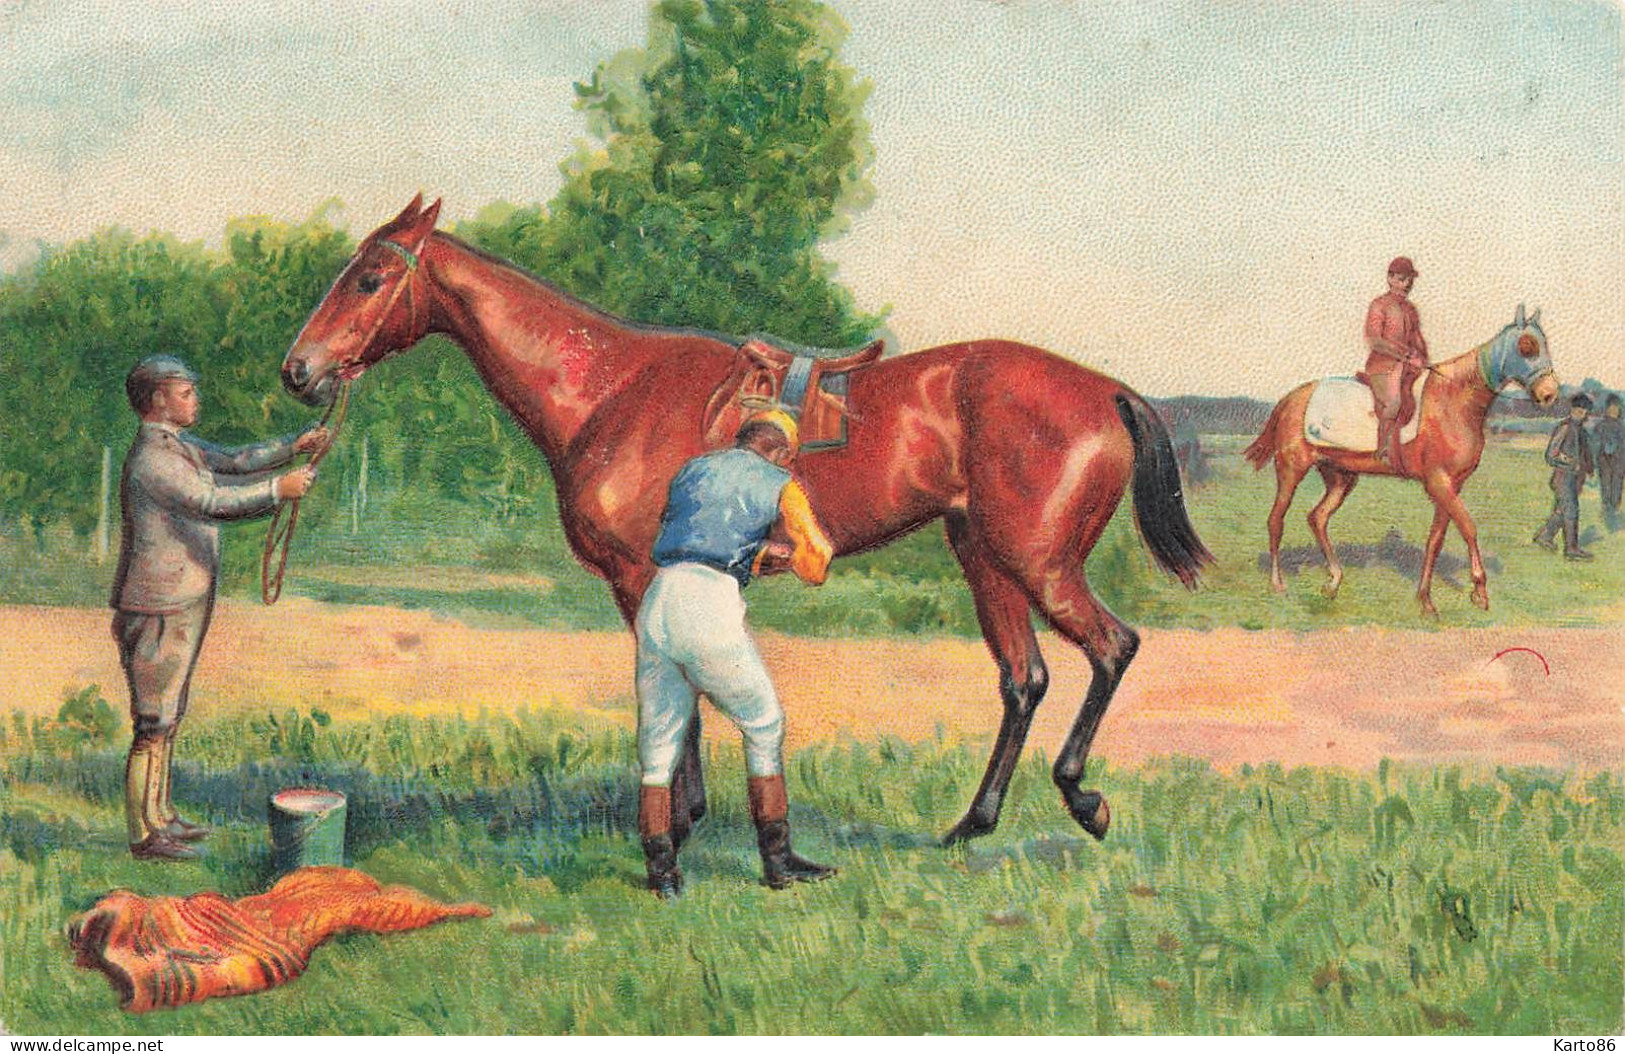 Hippisme * Série De 4 CPA Illustrateur Gaufrée Embossed * Hippique Cheval Chevaux équitation Jockey - Horse Show